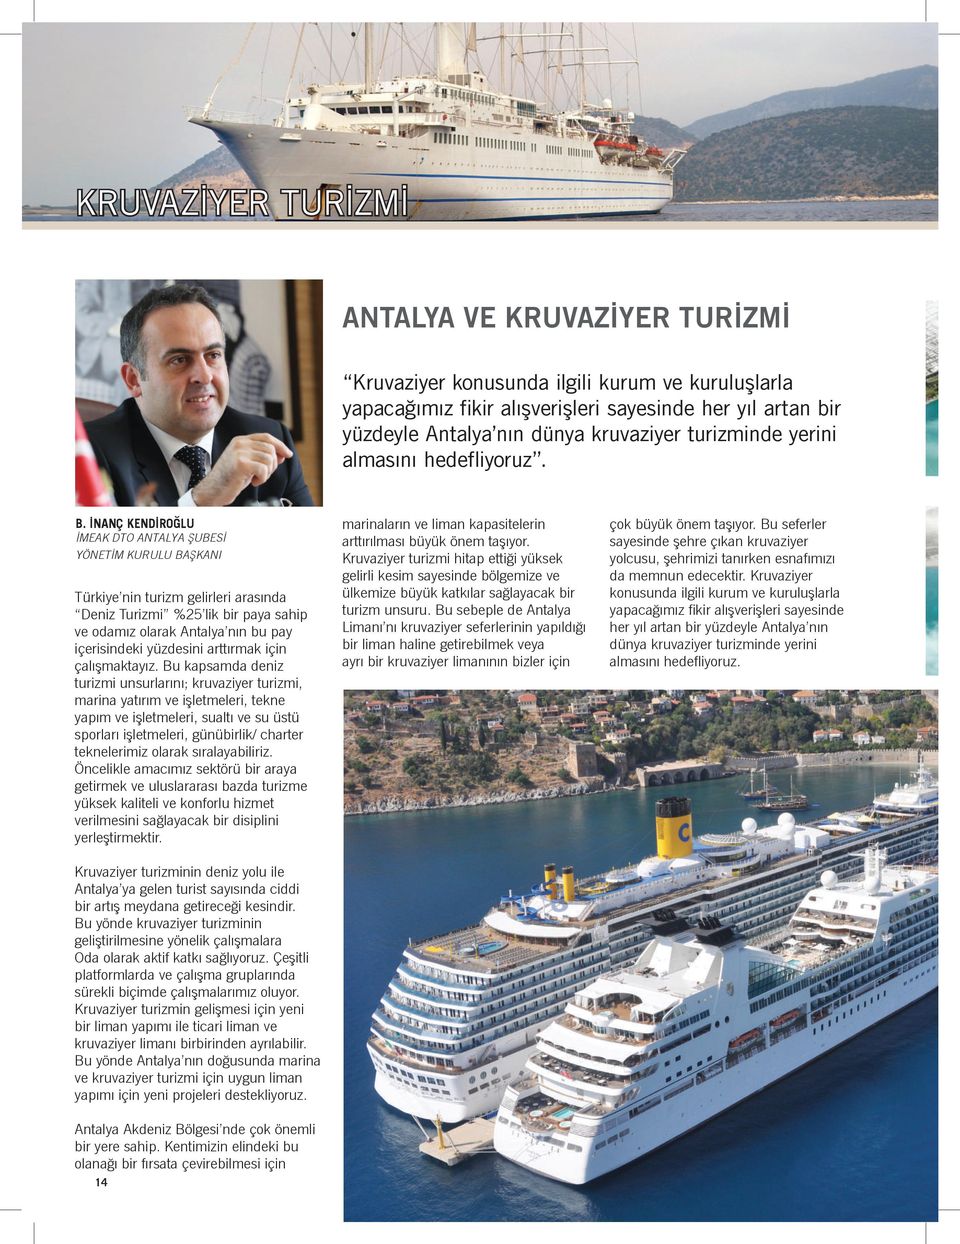 İNANÇ KENDİROĞLU İMEAK DTO ANTALYA ŞUBESİ YÖNETİM KURULU BAŞKANI Türkiye nin turizm gelirleri arasında Deniz Turizmi %25 lik bir paya sahip ve odamız olarak Antalya nın bu pay içerisindeki yüzdesini